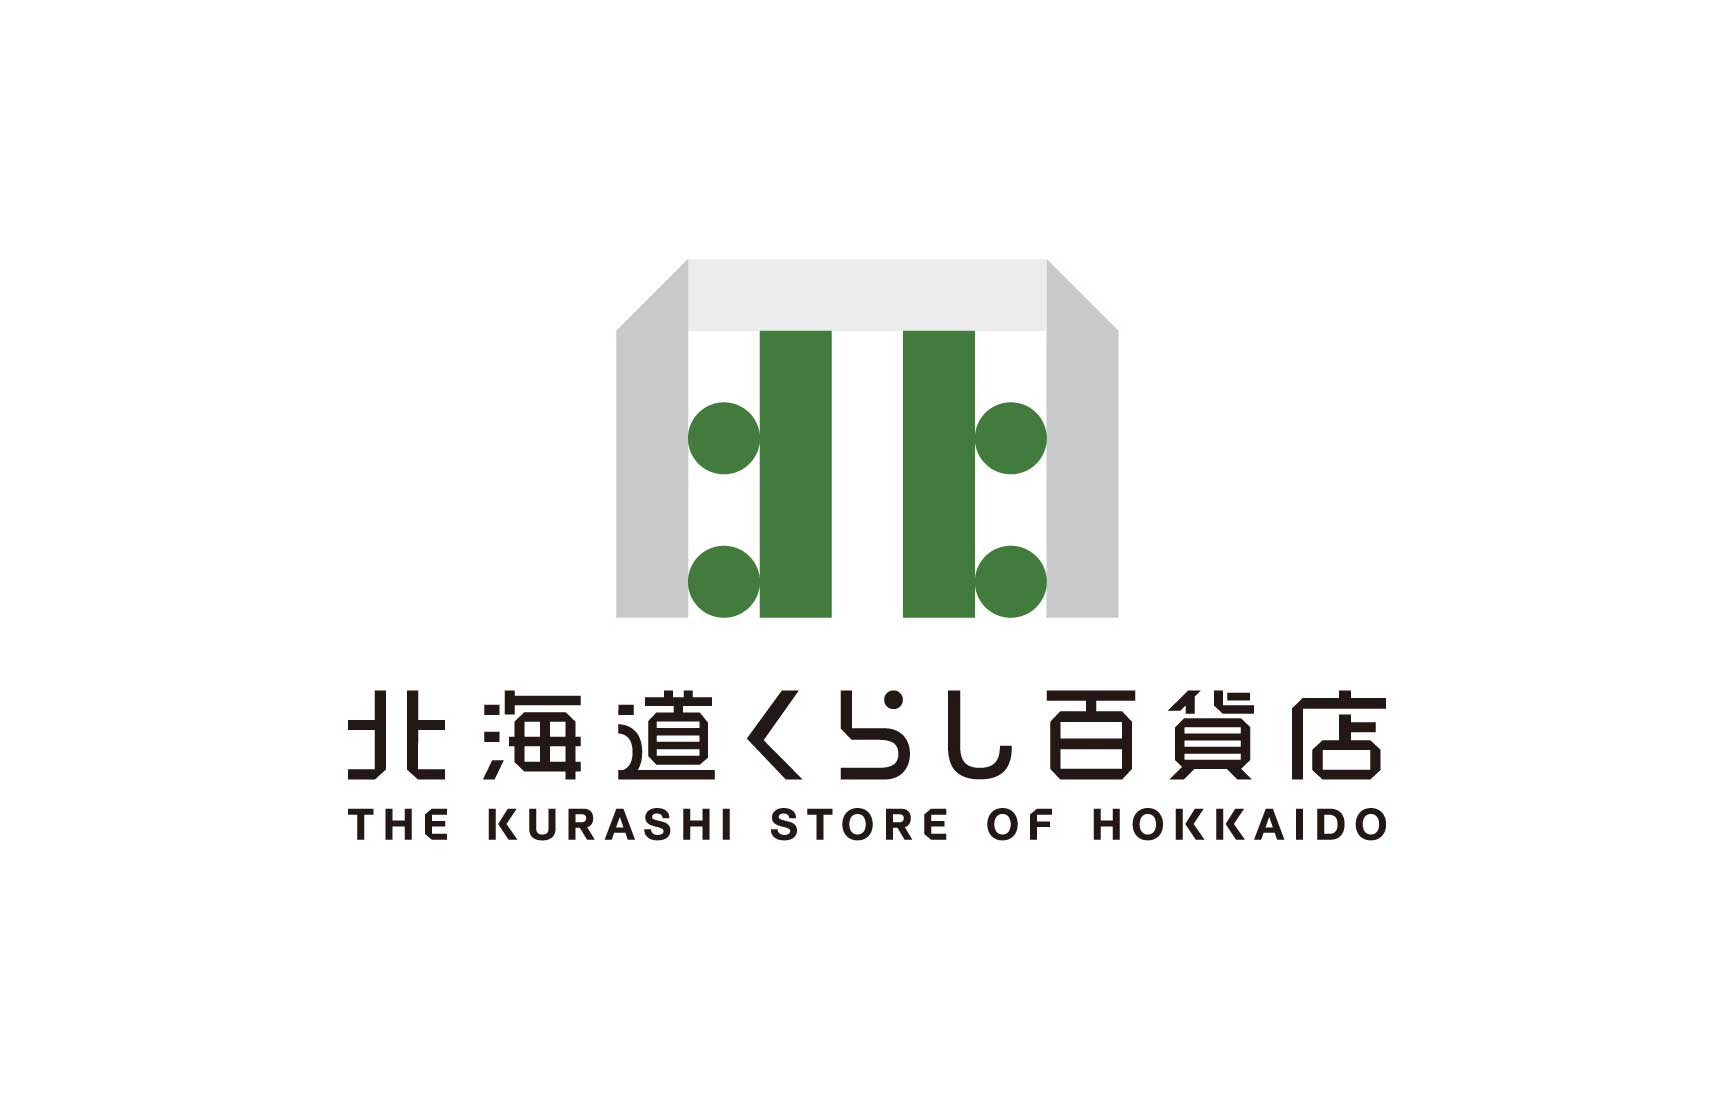 The Kurashi Store of Hokkaido 北海道くらし百貨店